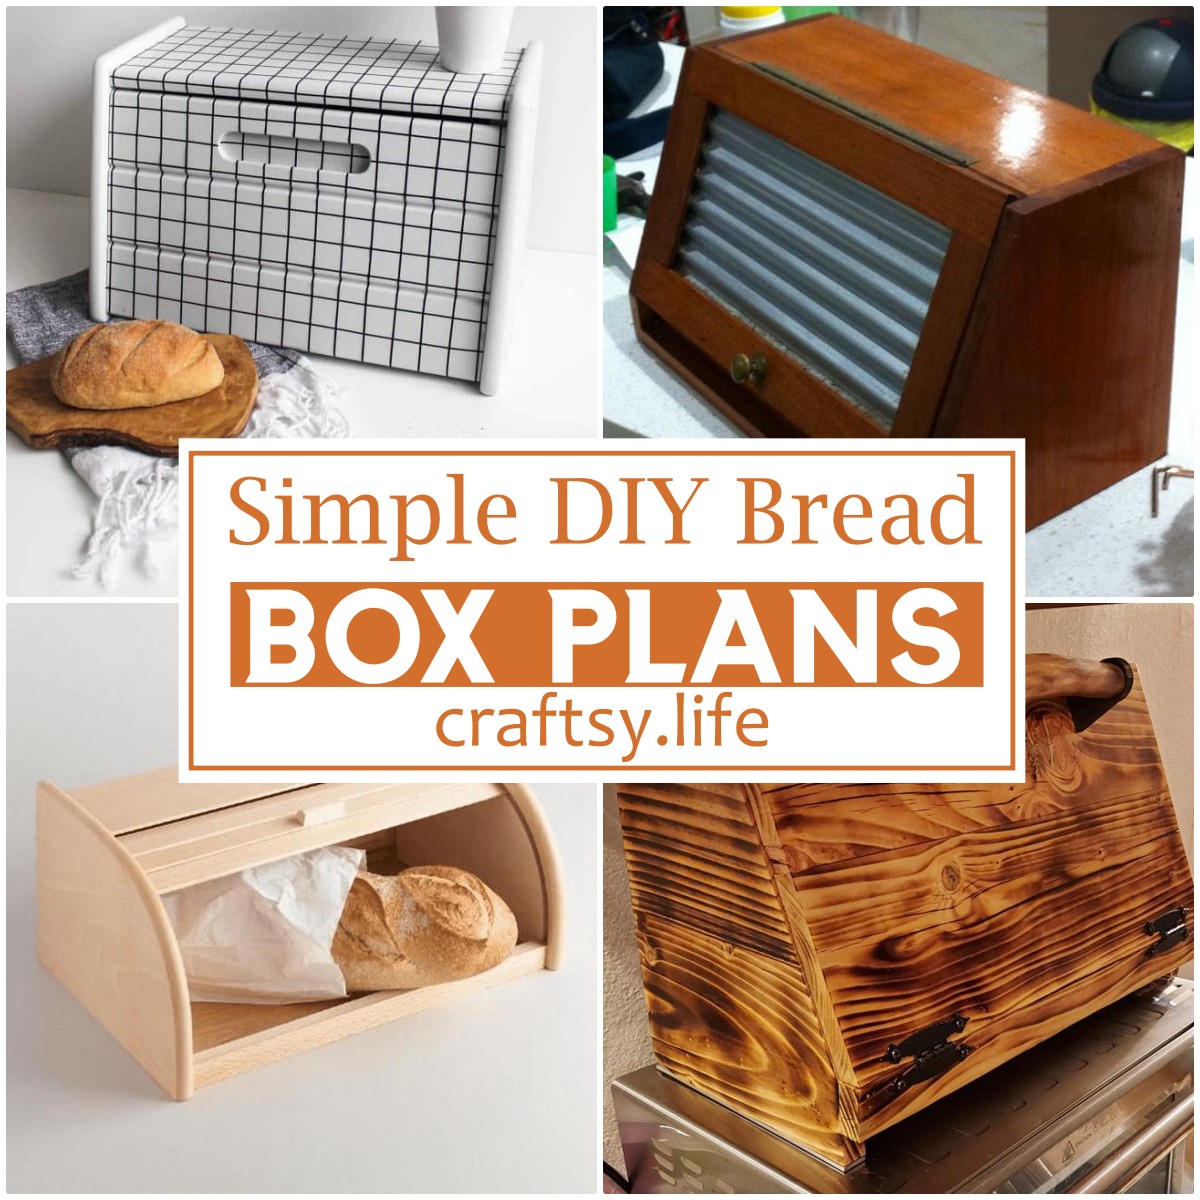 Simple DIY Bread Box Plans